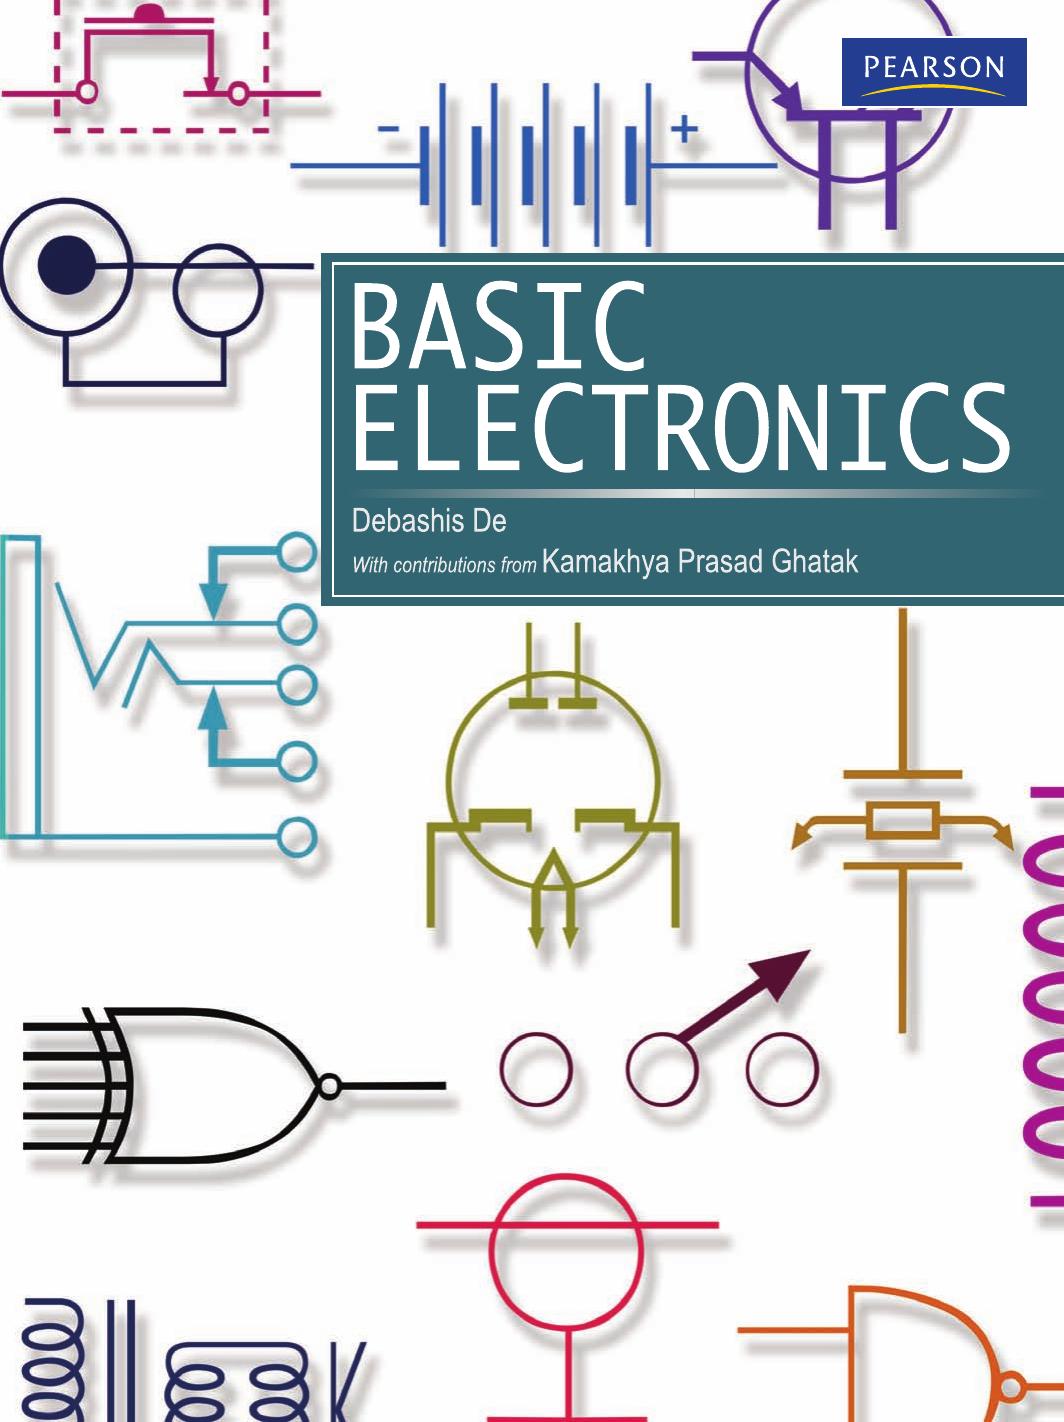 Basic Electronics by Basic Electronics-Pearson Education (2010)